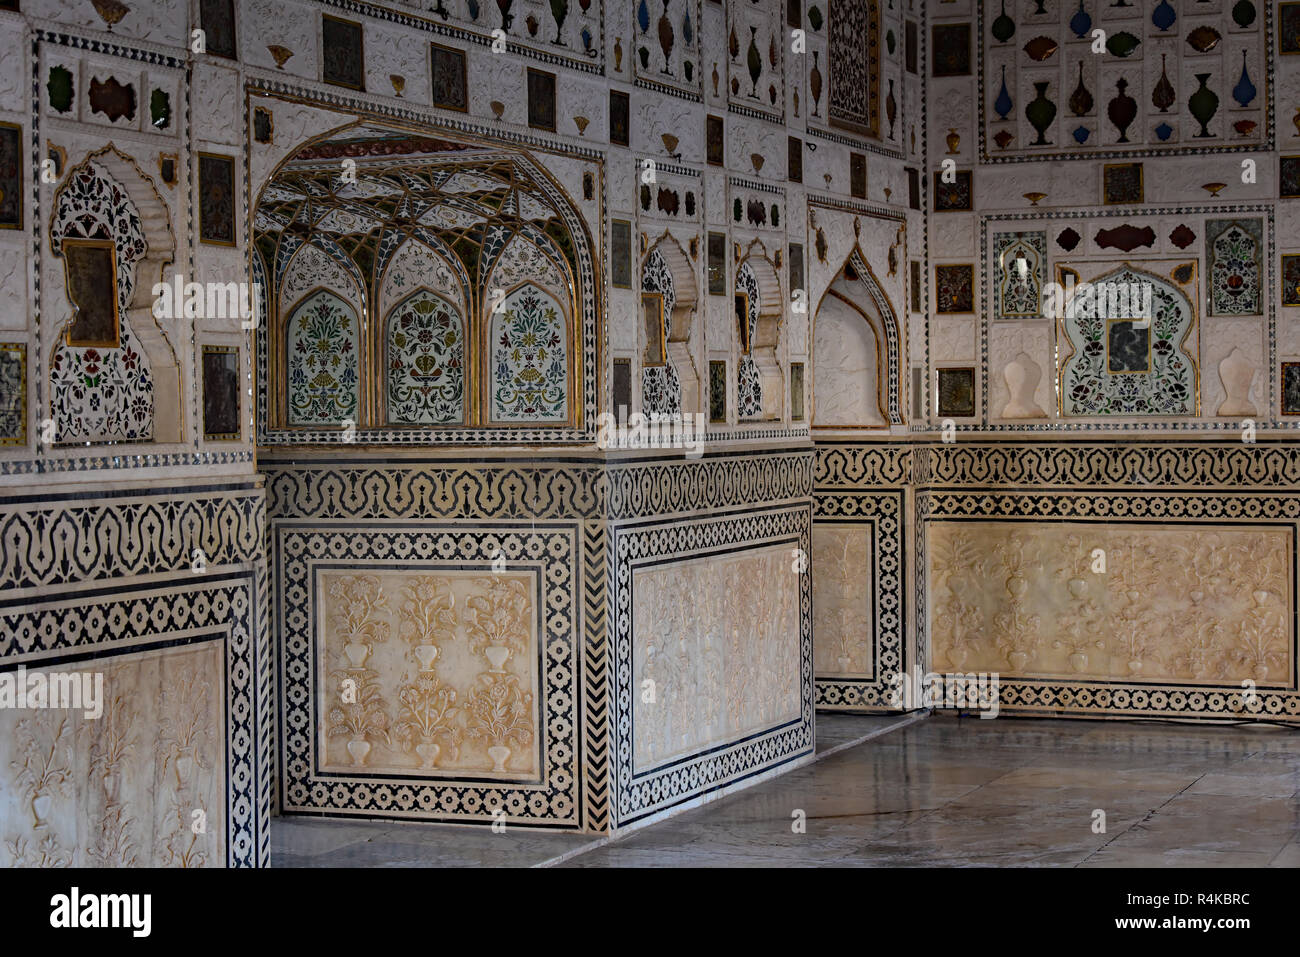 Sheesh Mahal (Palast der Spiegel), Amber Fort. Tausende von Spiegel Fliesen schmücken die Wände und die Decke dieses wunderbaren fort. Rajasthan, westliche Indien. Stockfoto